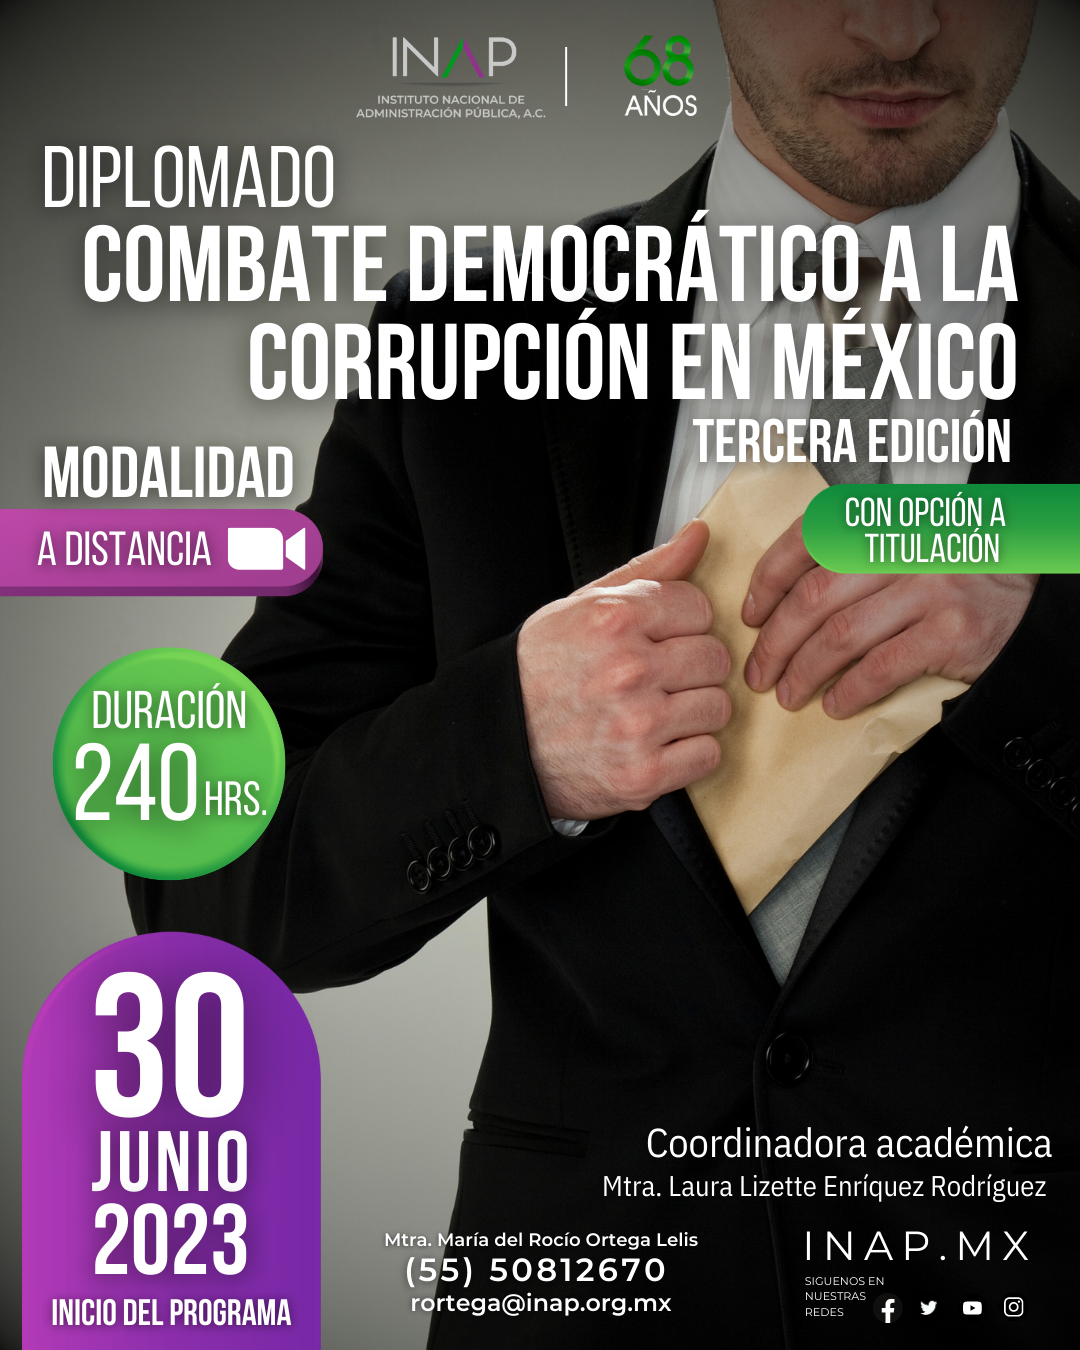 DIPLOMADO COMBATE DEMOGRATICO A LA CORRUPCION EN MEXICO